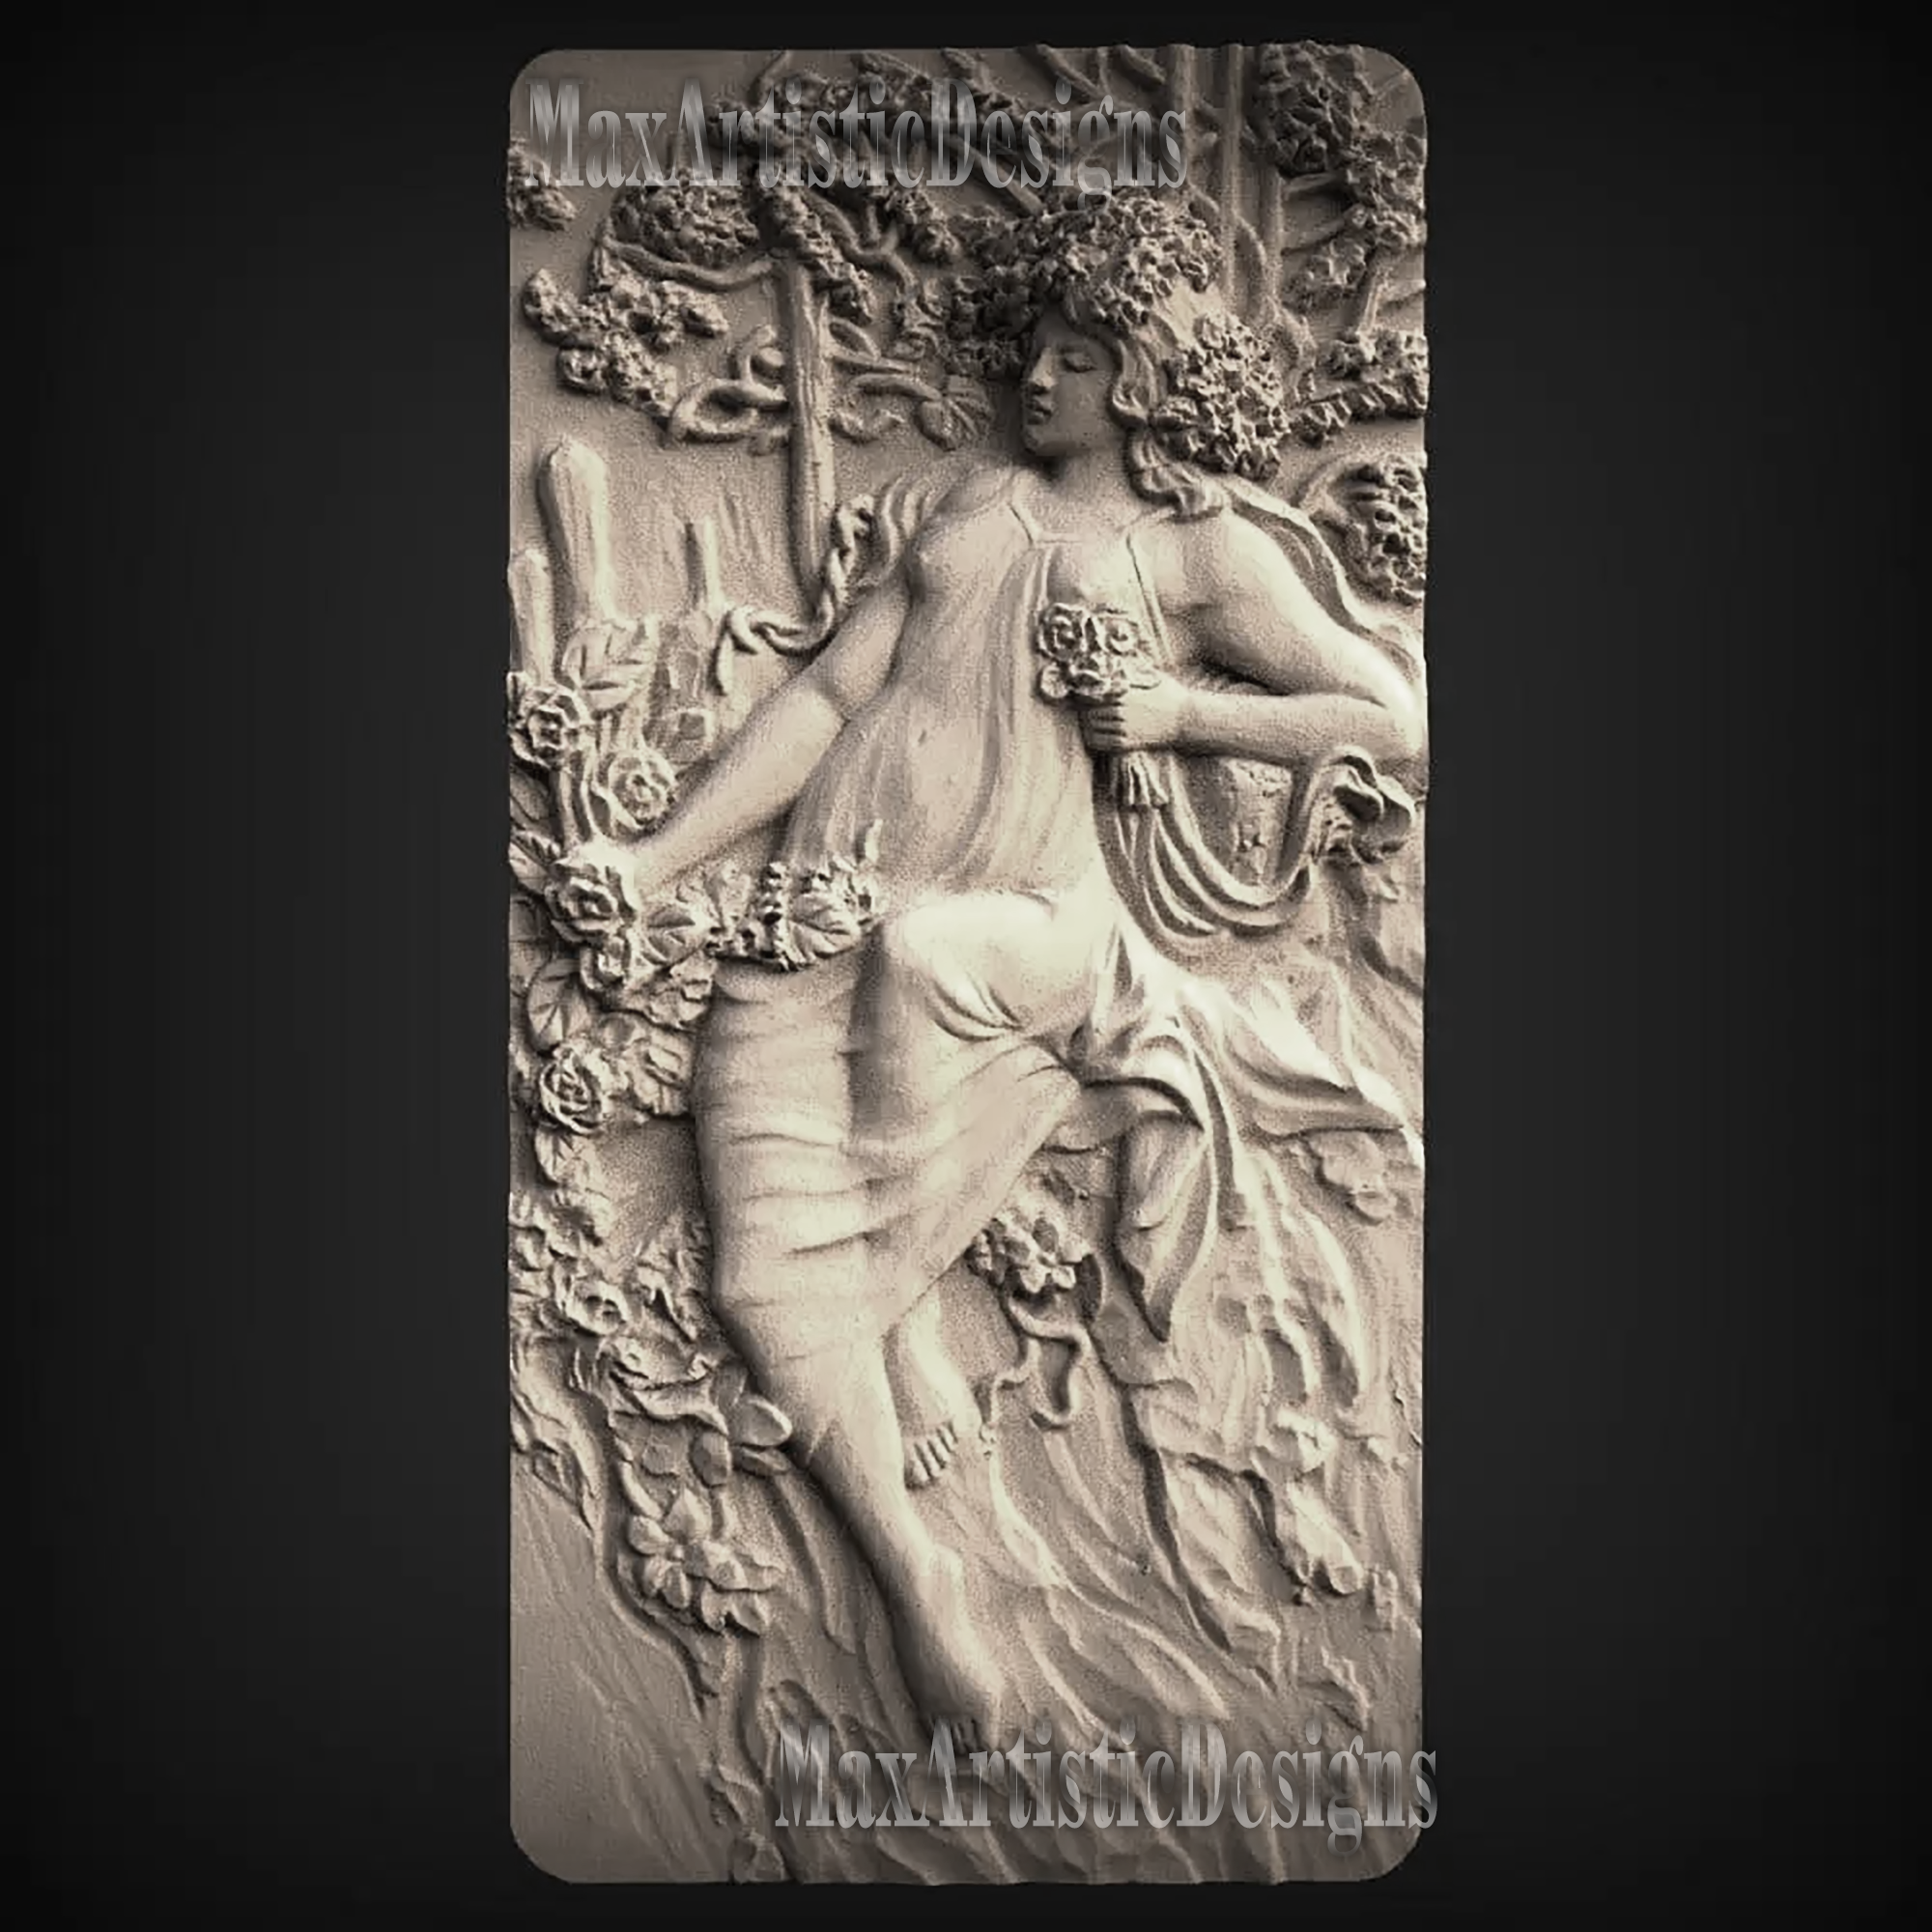 6 unités 3d STL Modèle Femmes Mythologie pour CNC Routeur Imprimante 3D Artcam Aspire Bas Relief_Wall Decor Relief